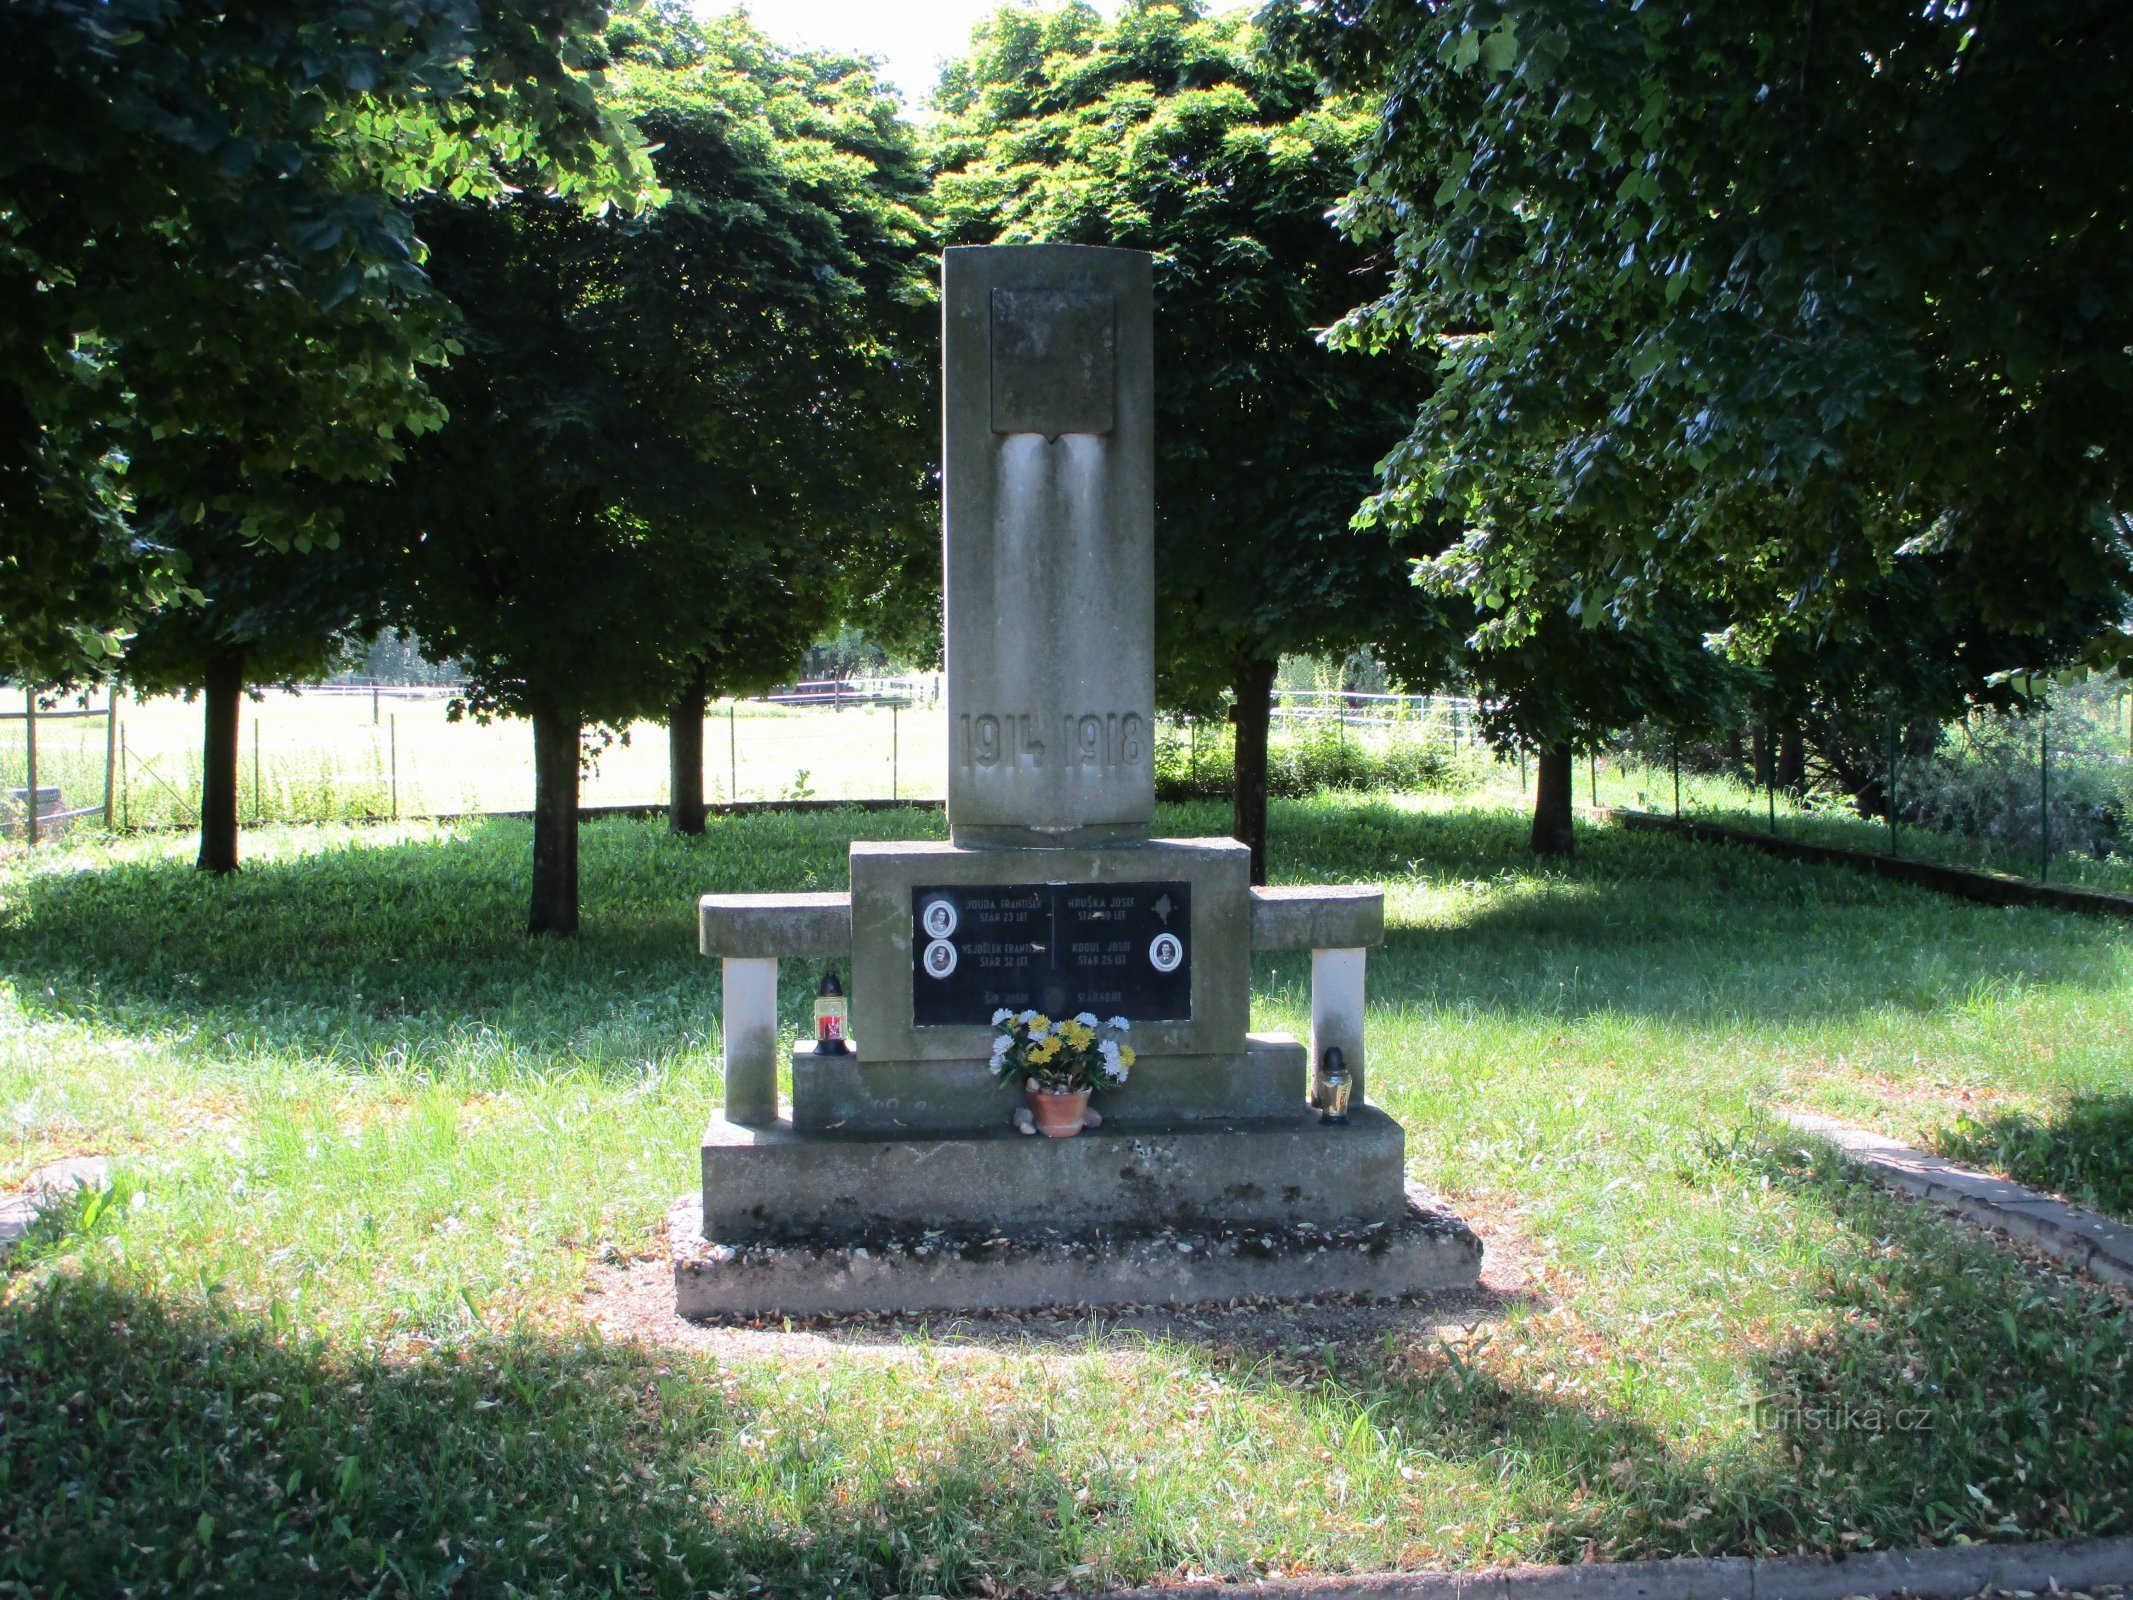 Đài tưởng niệm những người đã ngã xuống (Nerošov, 14.7.2020)